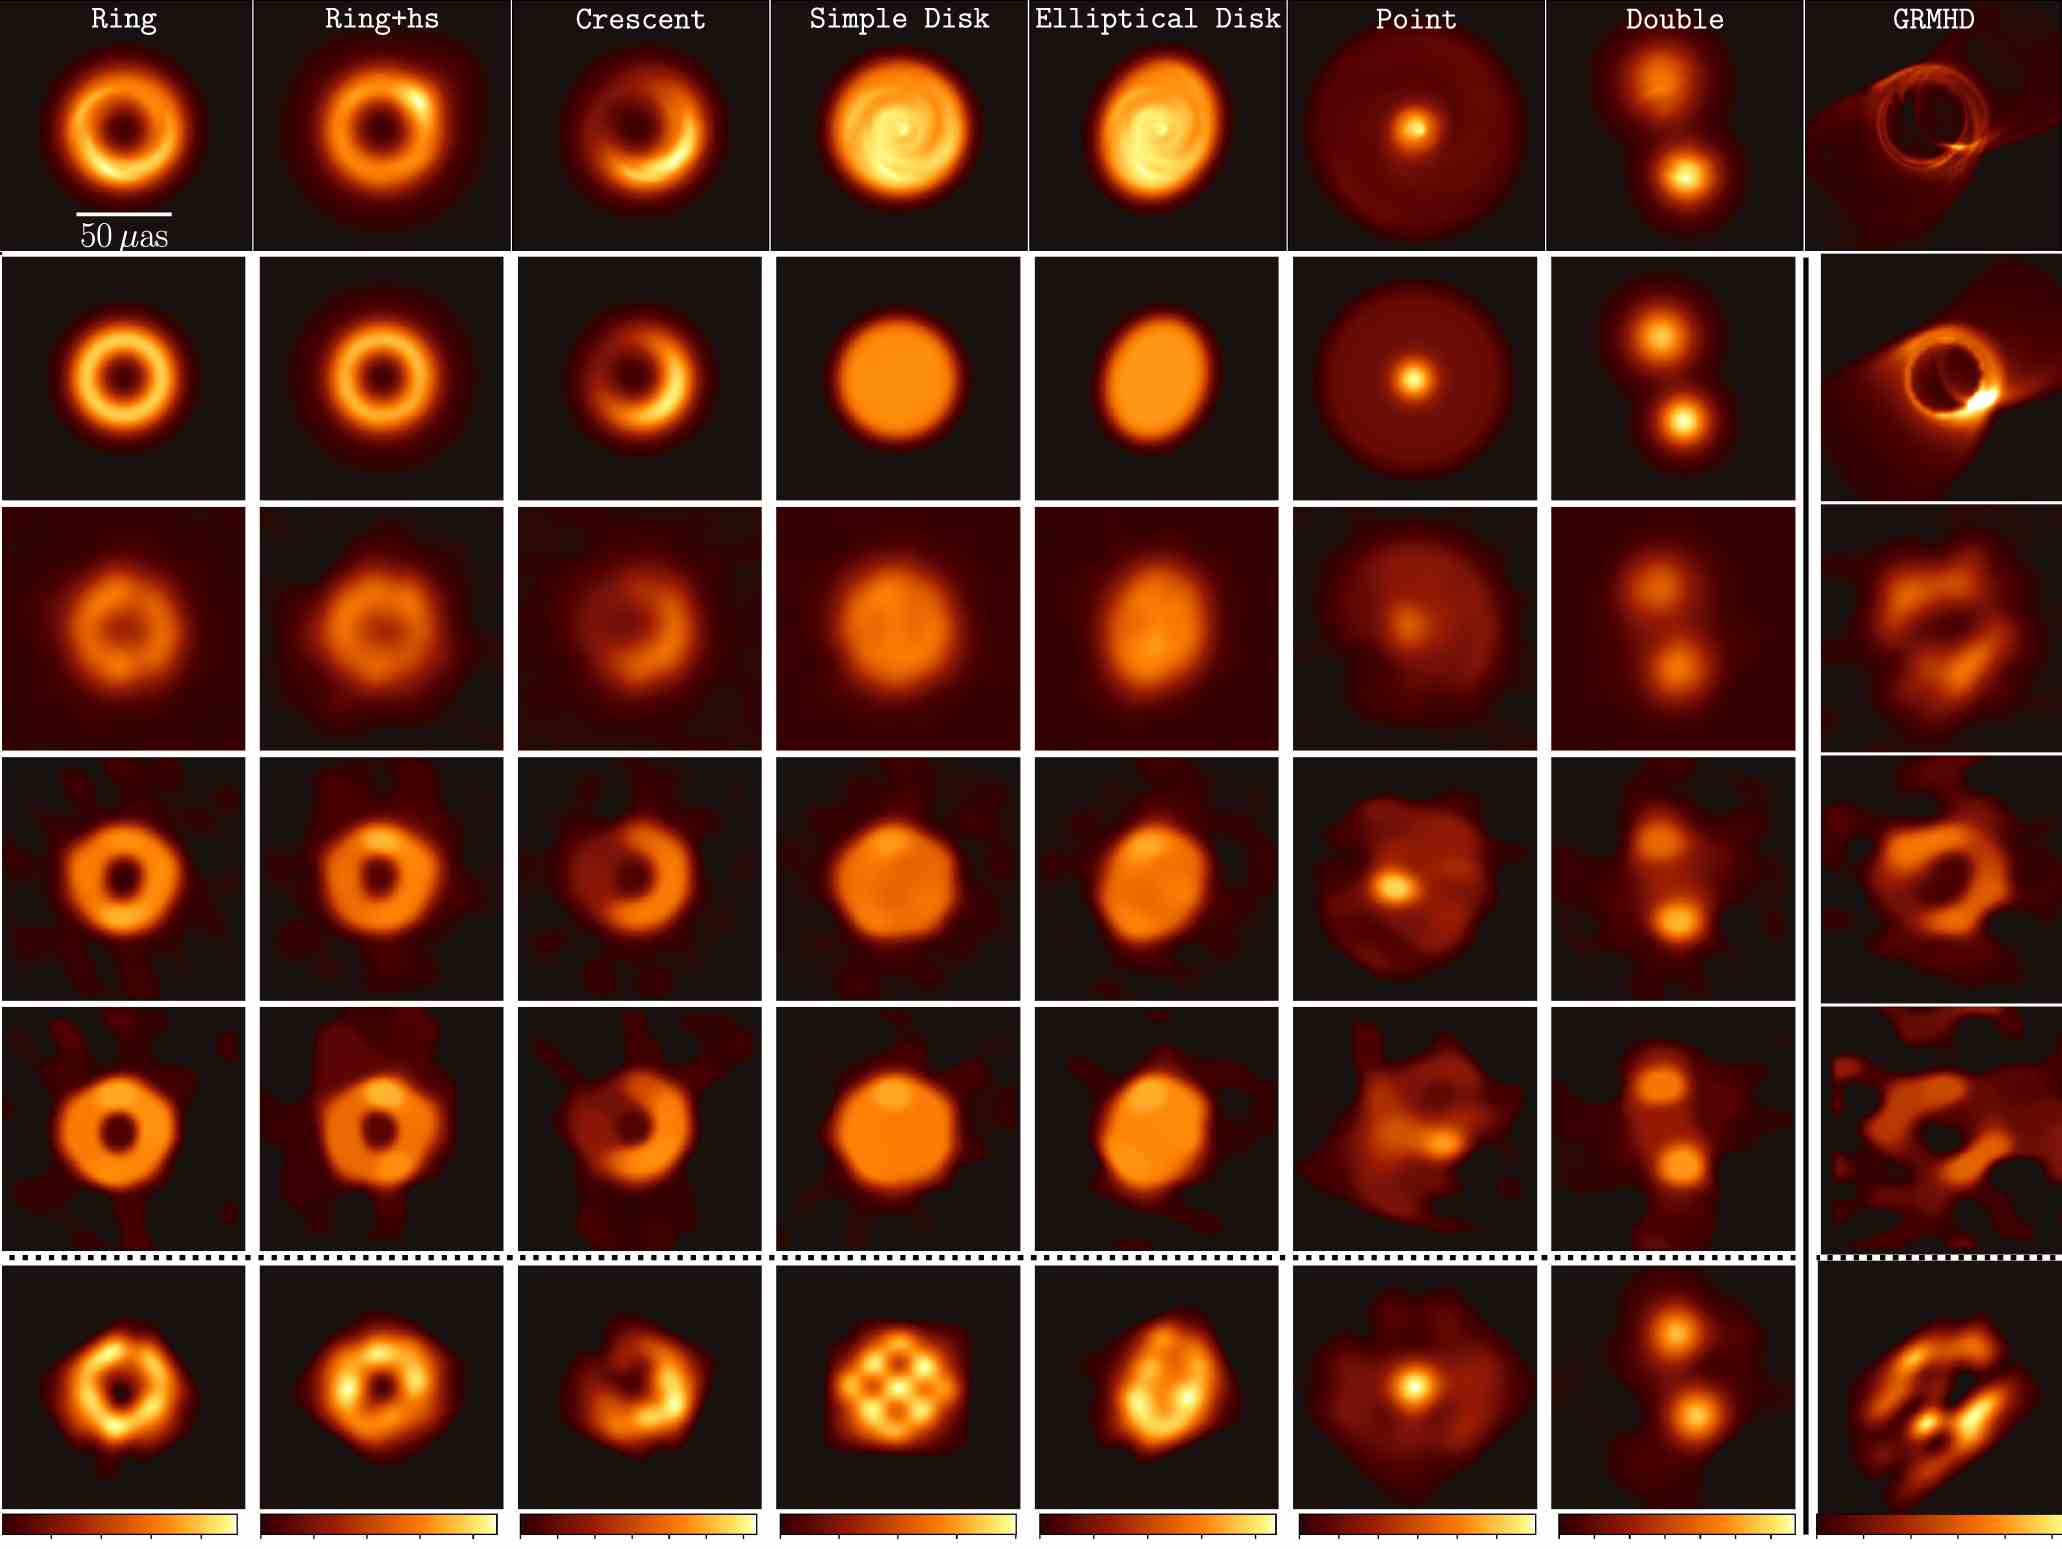 Bilder von simulierten Schwarzen Löchern und wie ihre Daten für Sensoren auf der Erde erscheinen könnten.